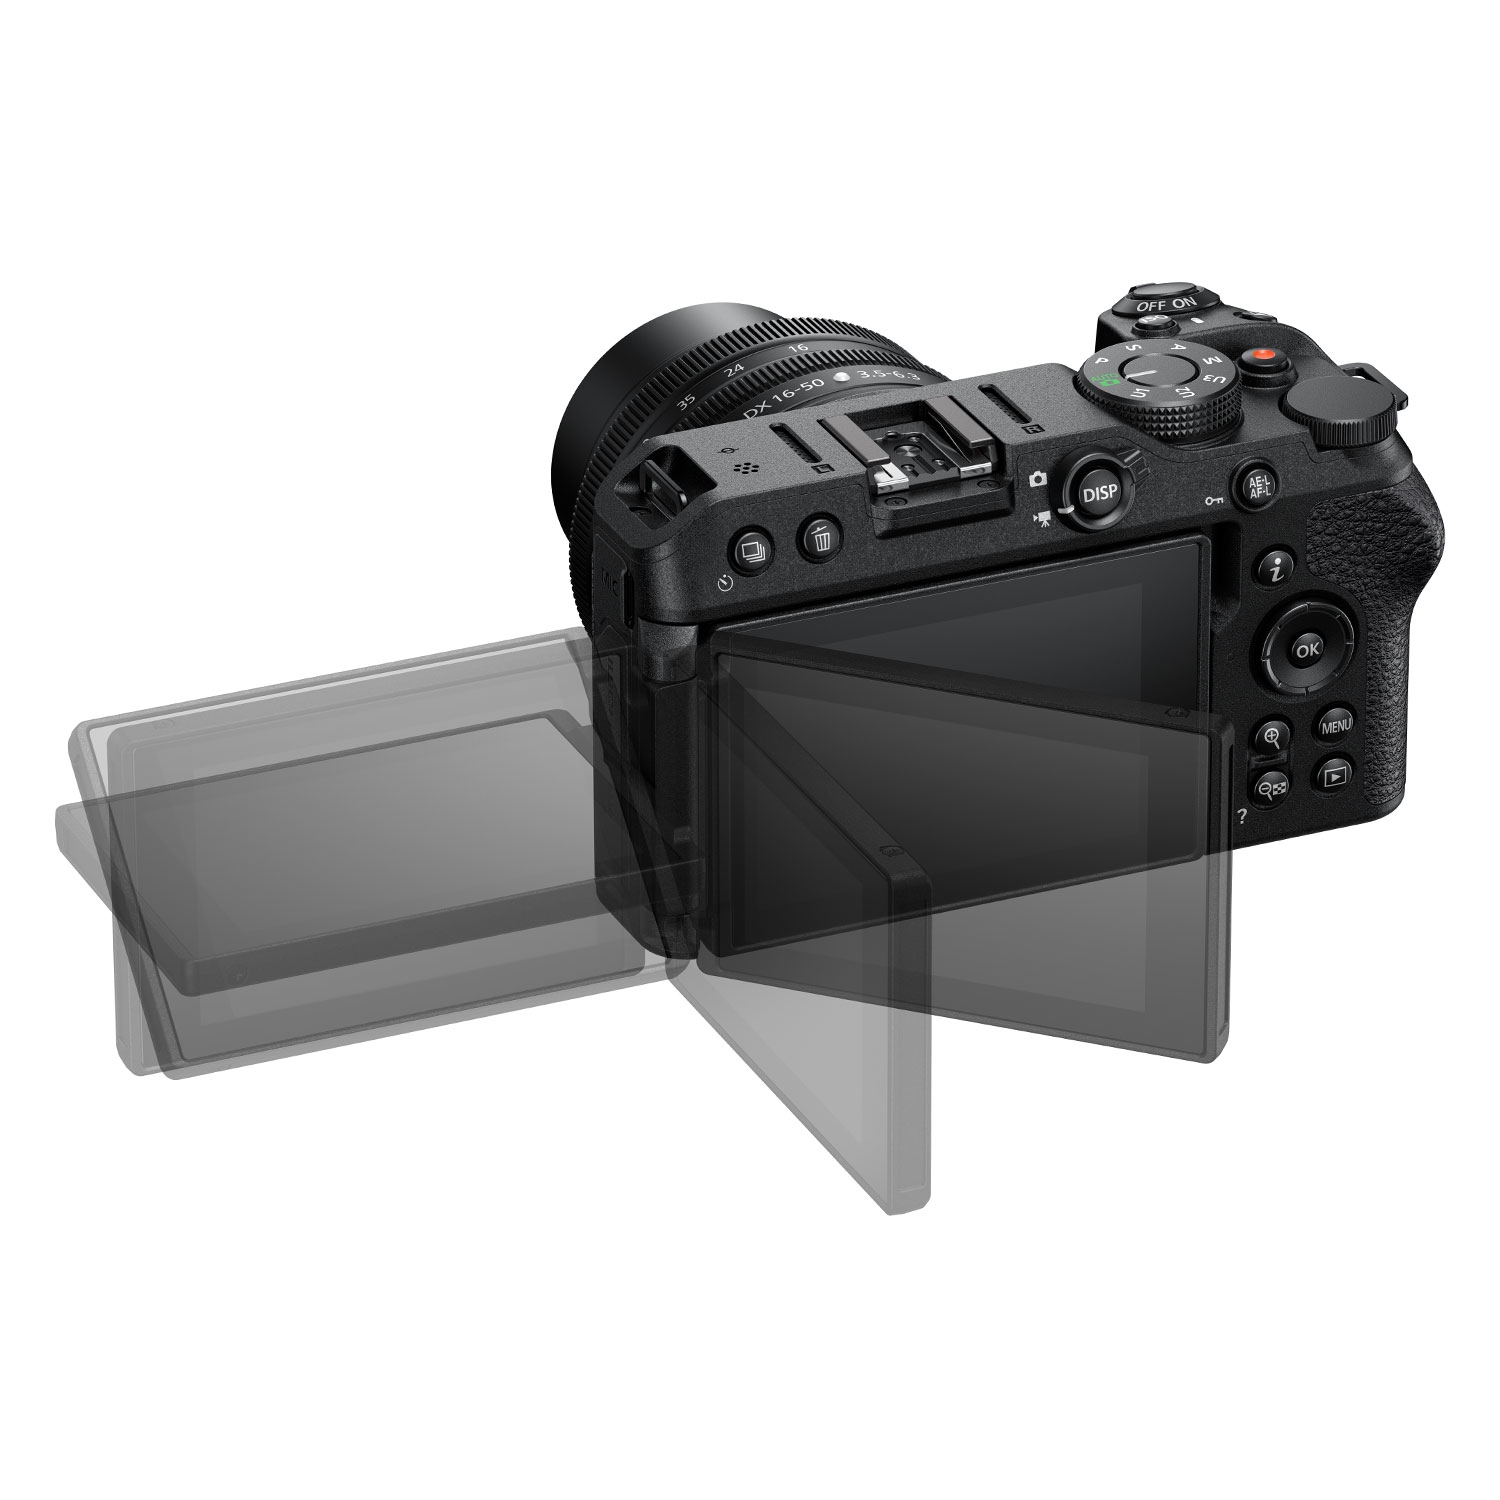 Nikon Z30 + NIKKOR Z DX 16-50mm 1:3,5-6,3 VR + NIKKOR Z DX 50-250mm 1:4,5-6,3 VR